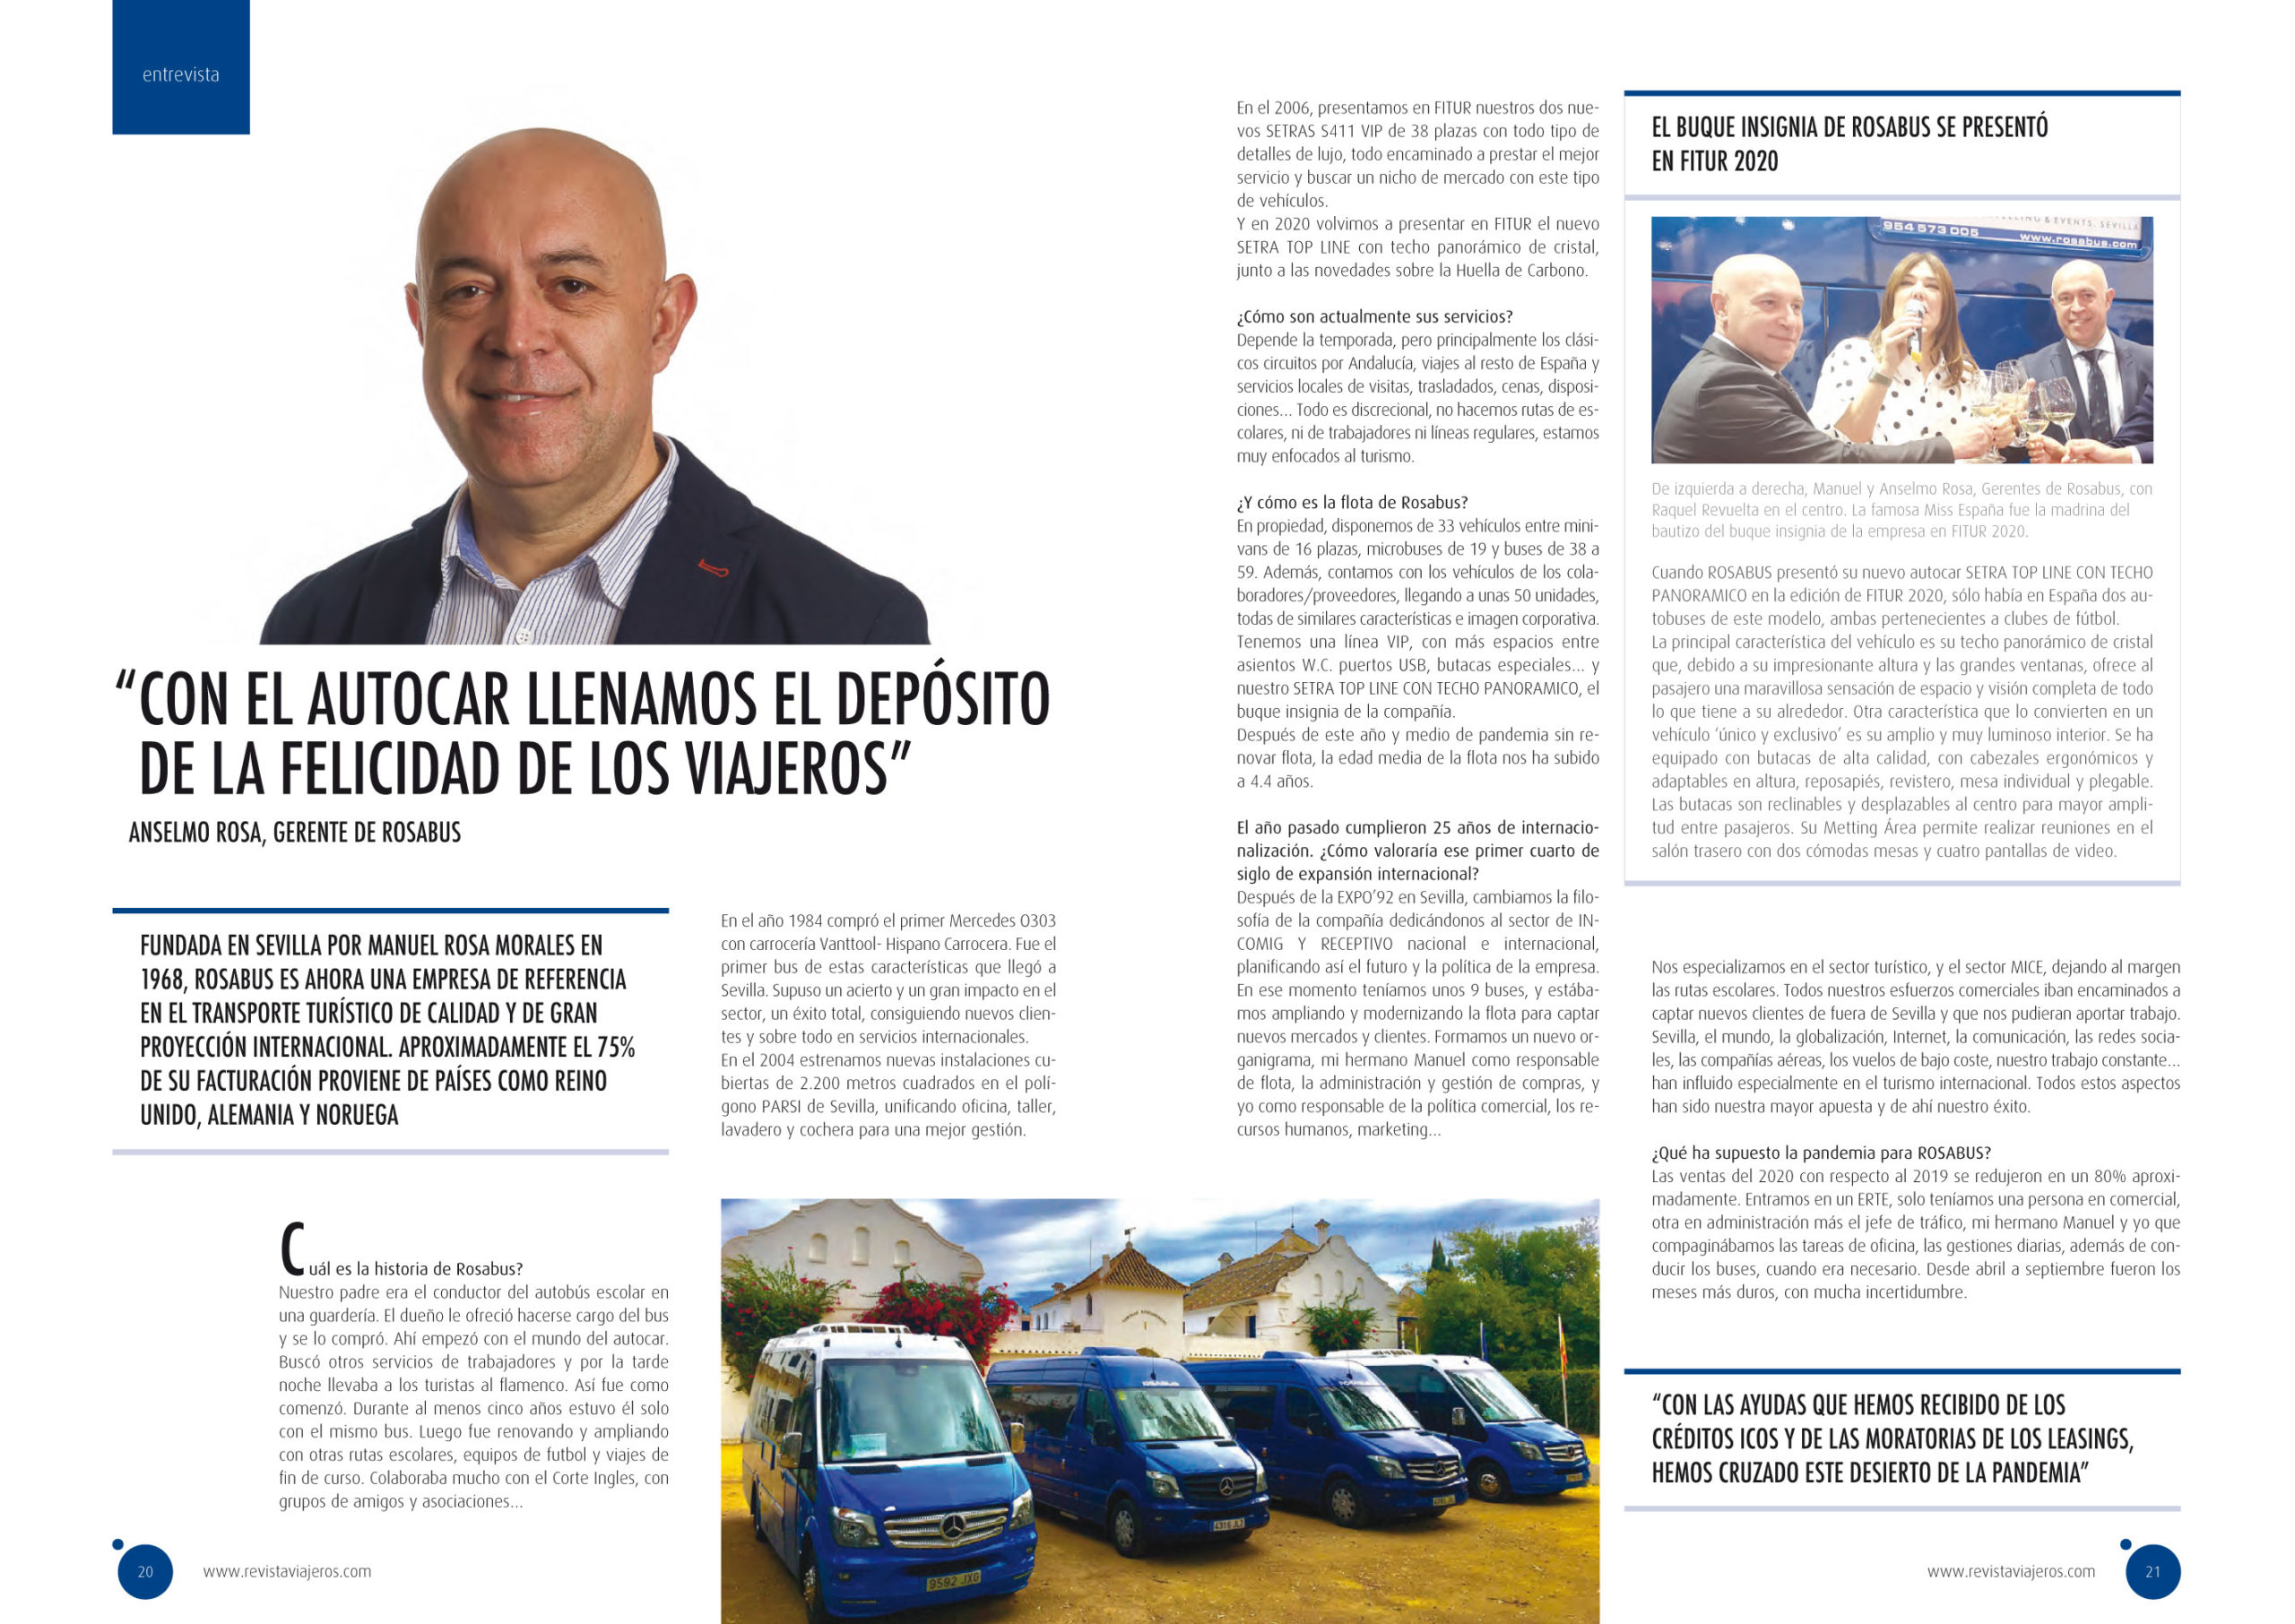 Entrevista a Anselmo Rosa, CEO de Rosabus, en la revista Viajeros